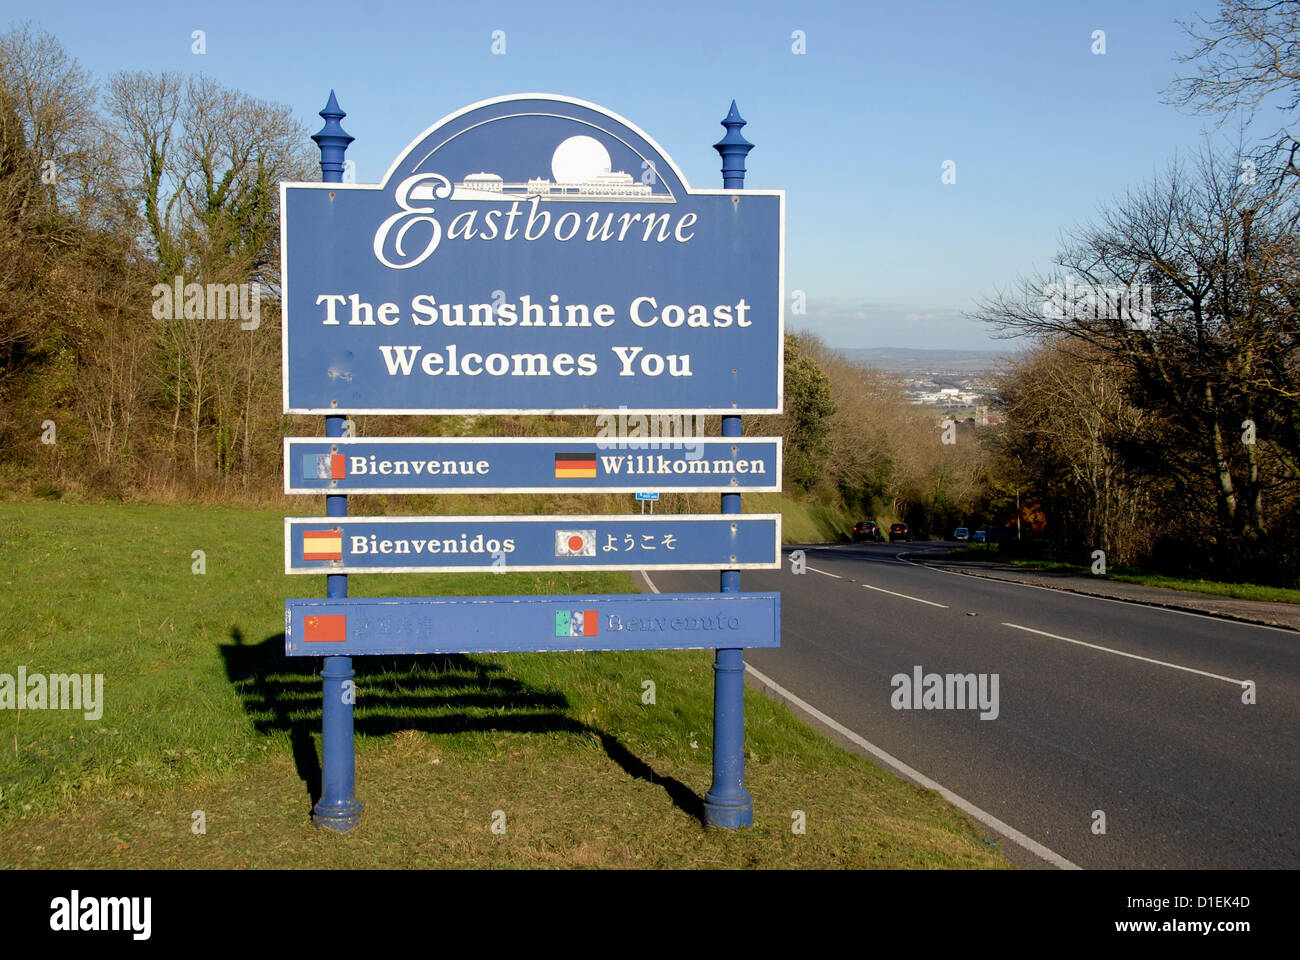 Willkommen Sie bei Eastbourne Schild mit Sunshine Coast, Sussex, UK Stockfoto